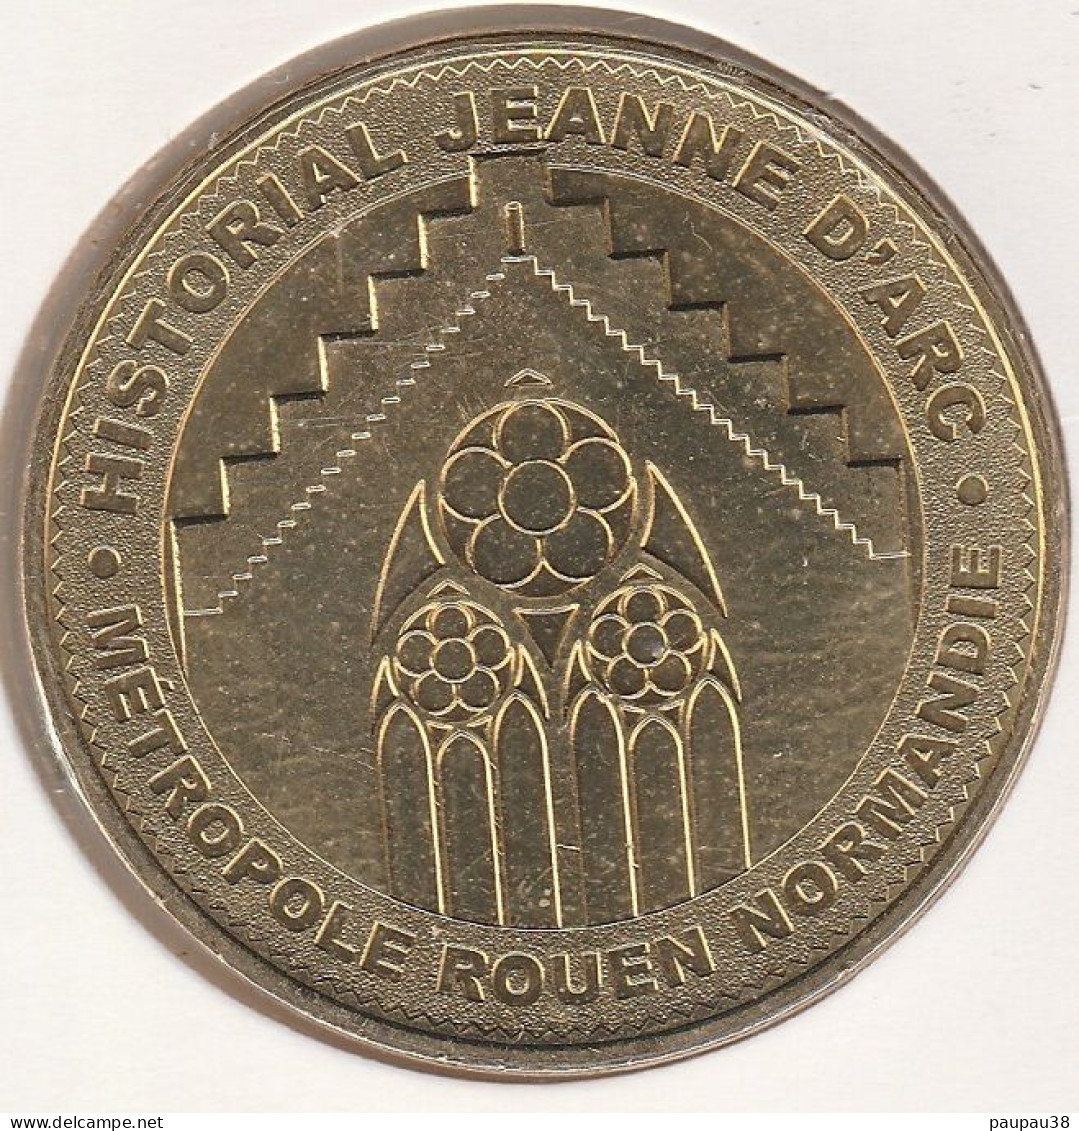 MONNAIE DE PARIS 2015 - 76 ROUEN Historial Jeanne D'Arc - Métropole Rouen Normandie - 2015